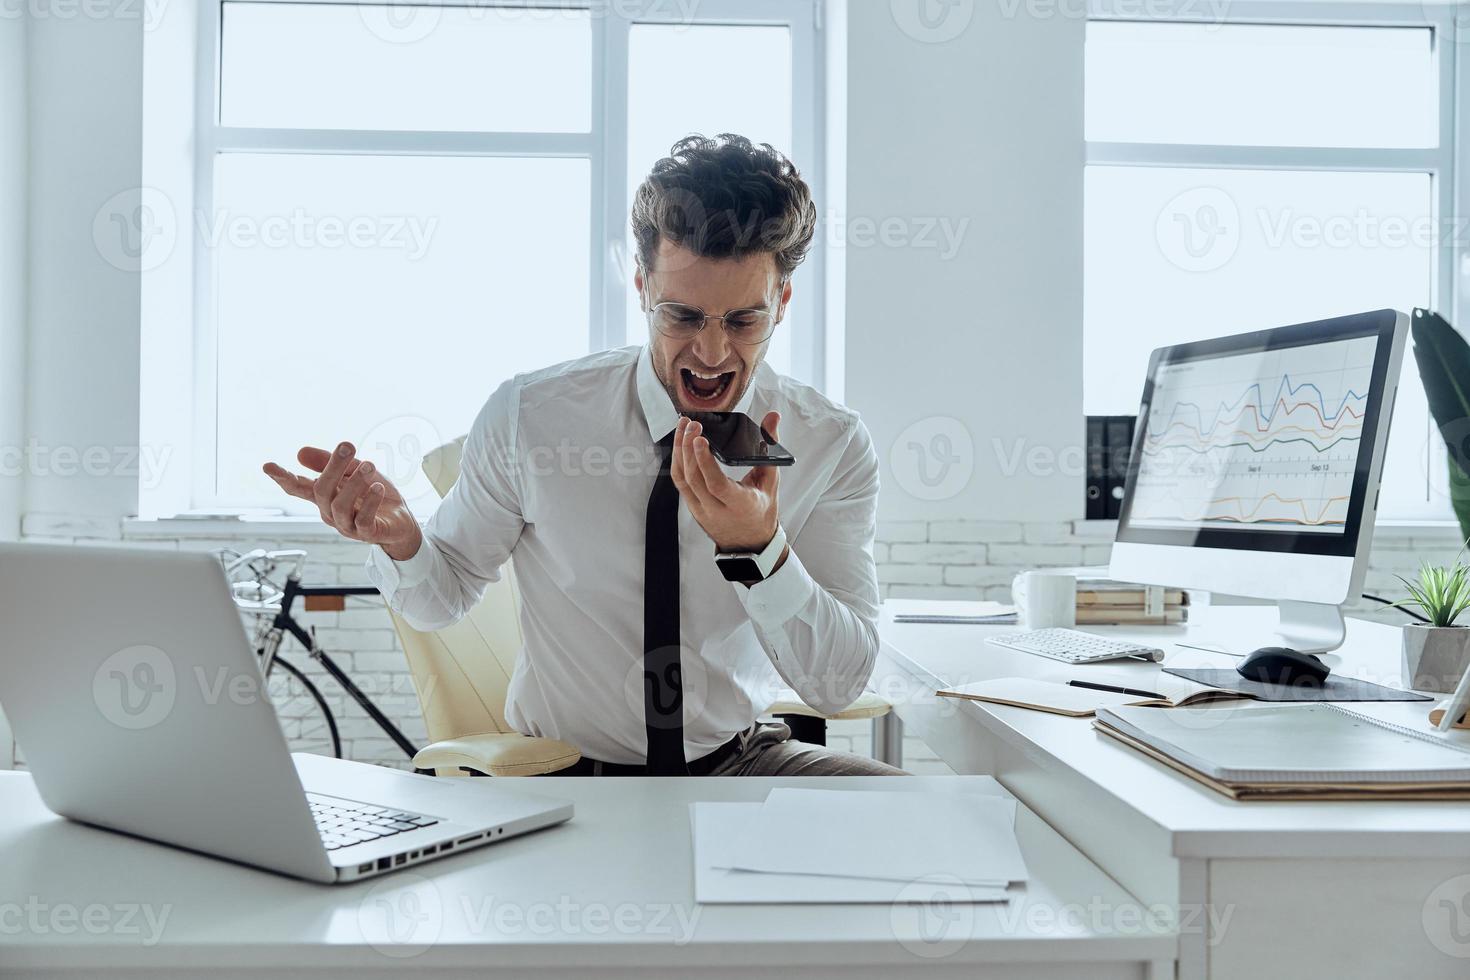 jovem furioso usando alto-falante enquanto gritava no celular no escritório foto